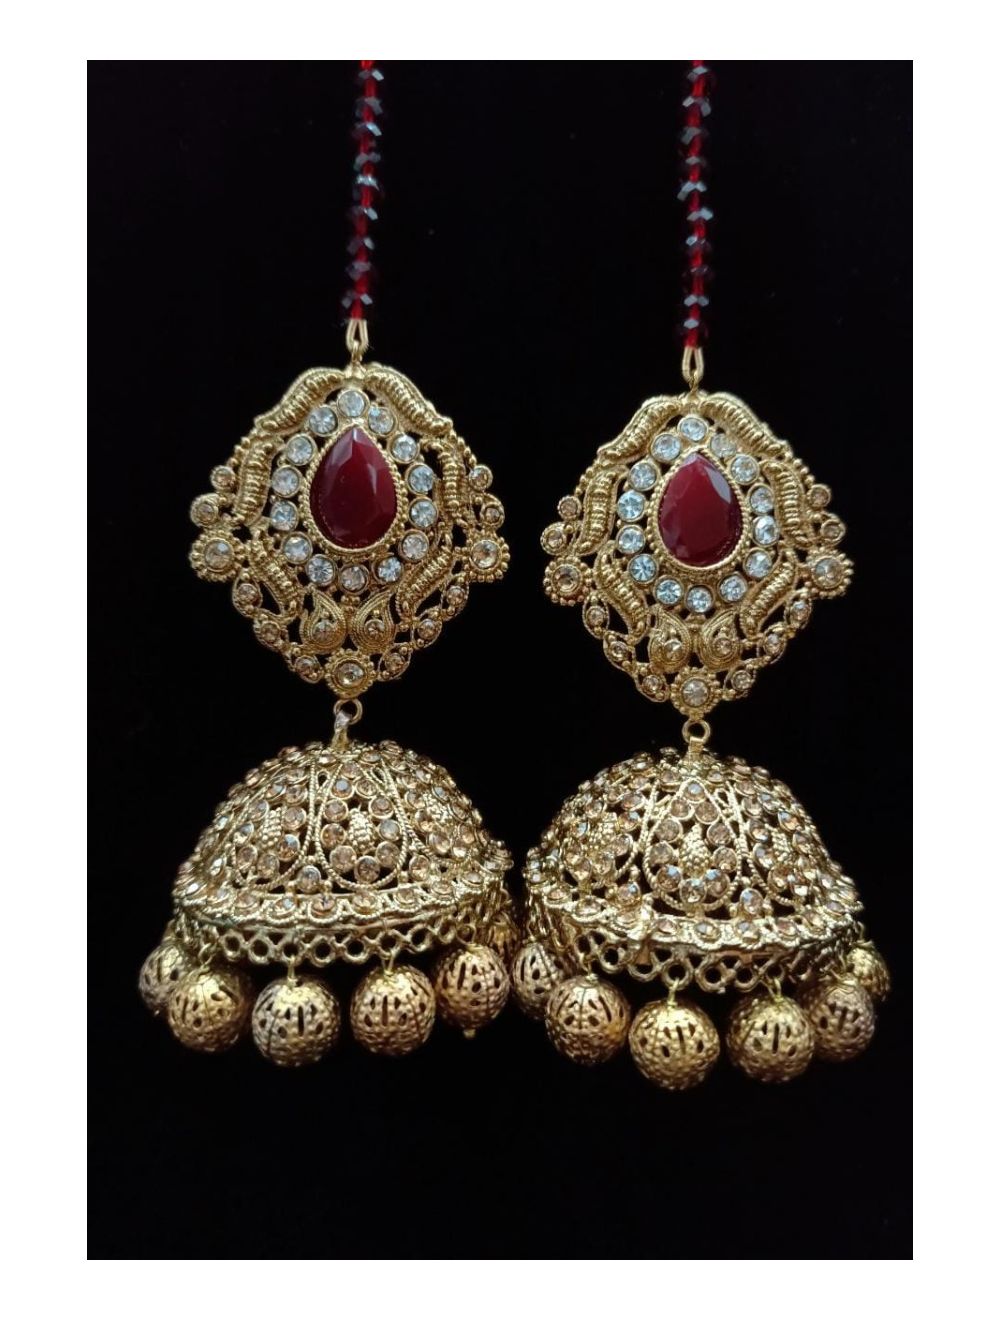 Buy Jhumka Earrings/ American Diamond Jhumki Earrings/ Pakistani Jewelry/  Indian Jhumka Earrings Online in India - Etsy